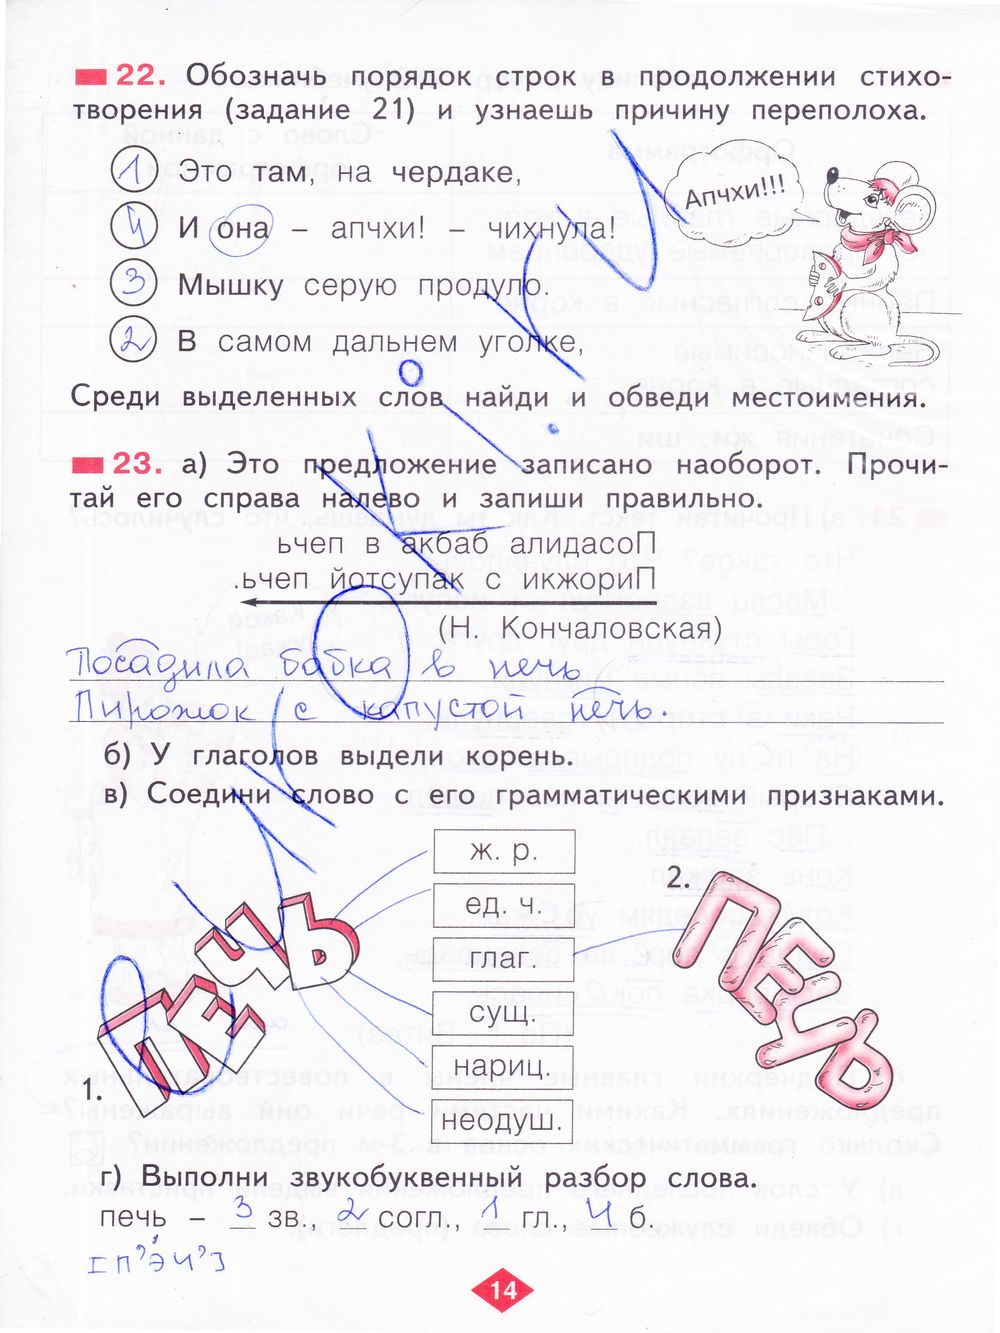 ГДЗ Русский язык 2 класс - стр. 14